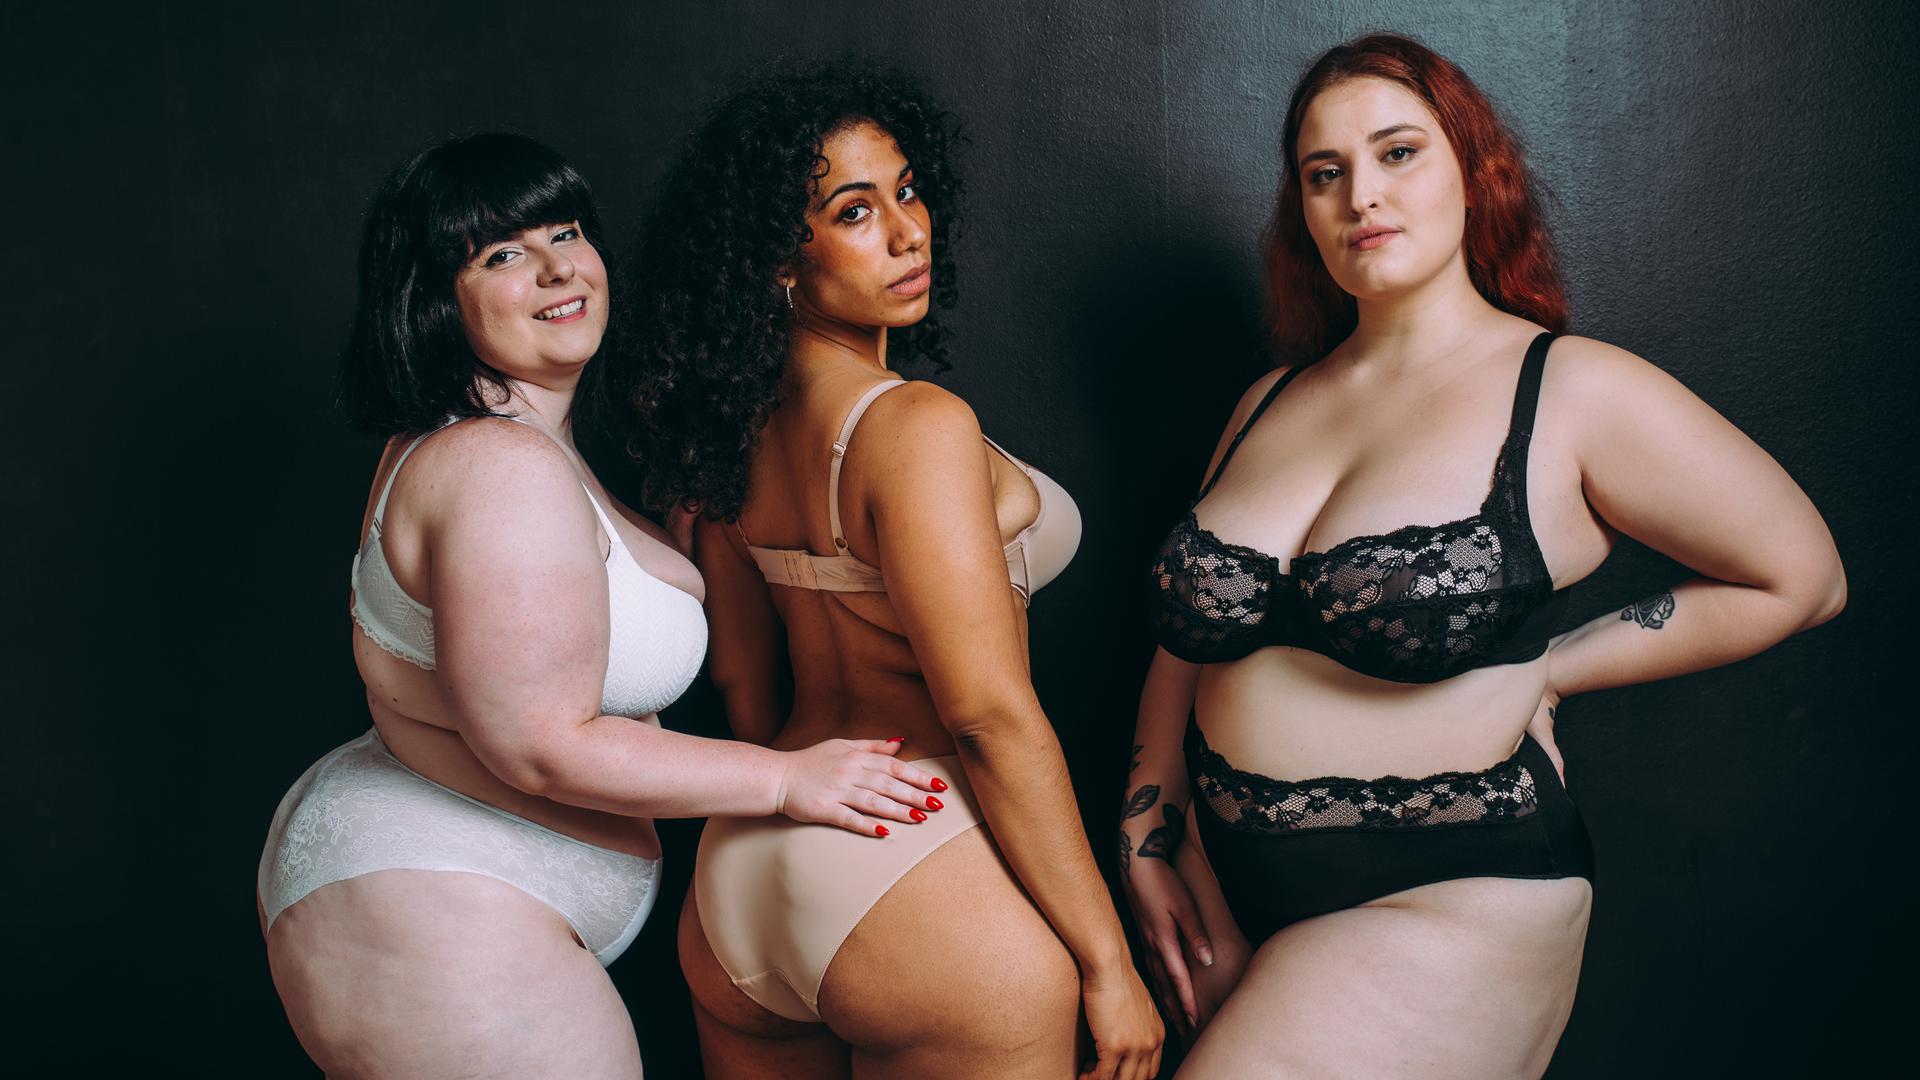 Drei mehrgewichtige Frauen schauen für ein Fotoprojekt selbstbewusst in die Kamera. 